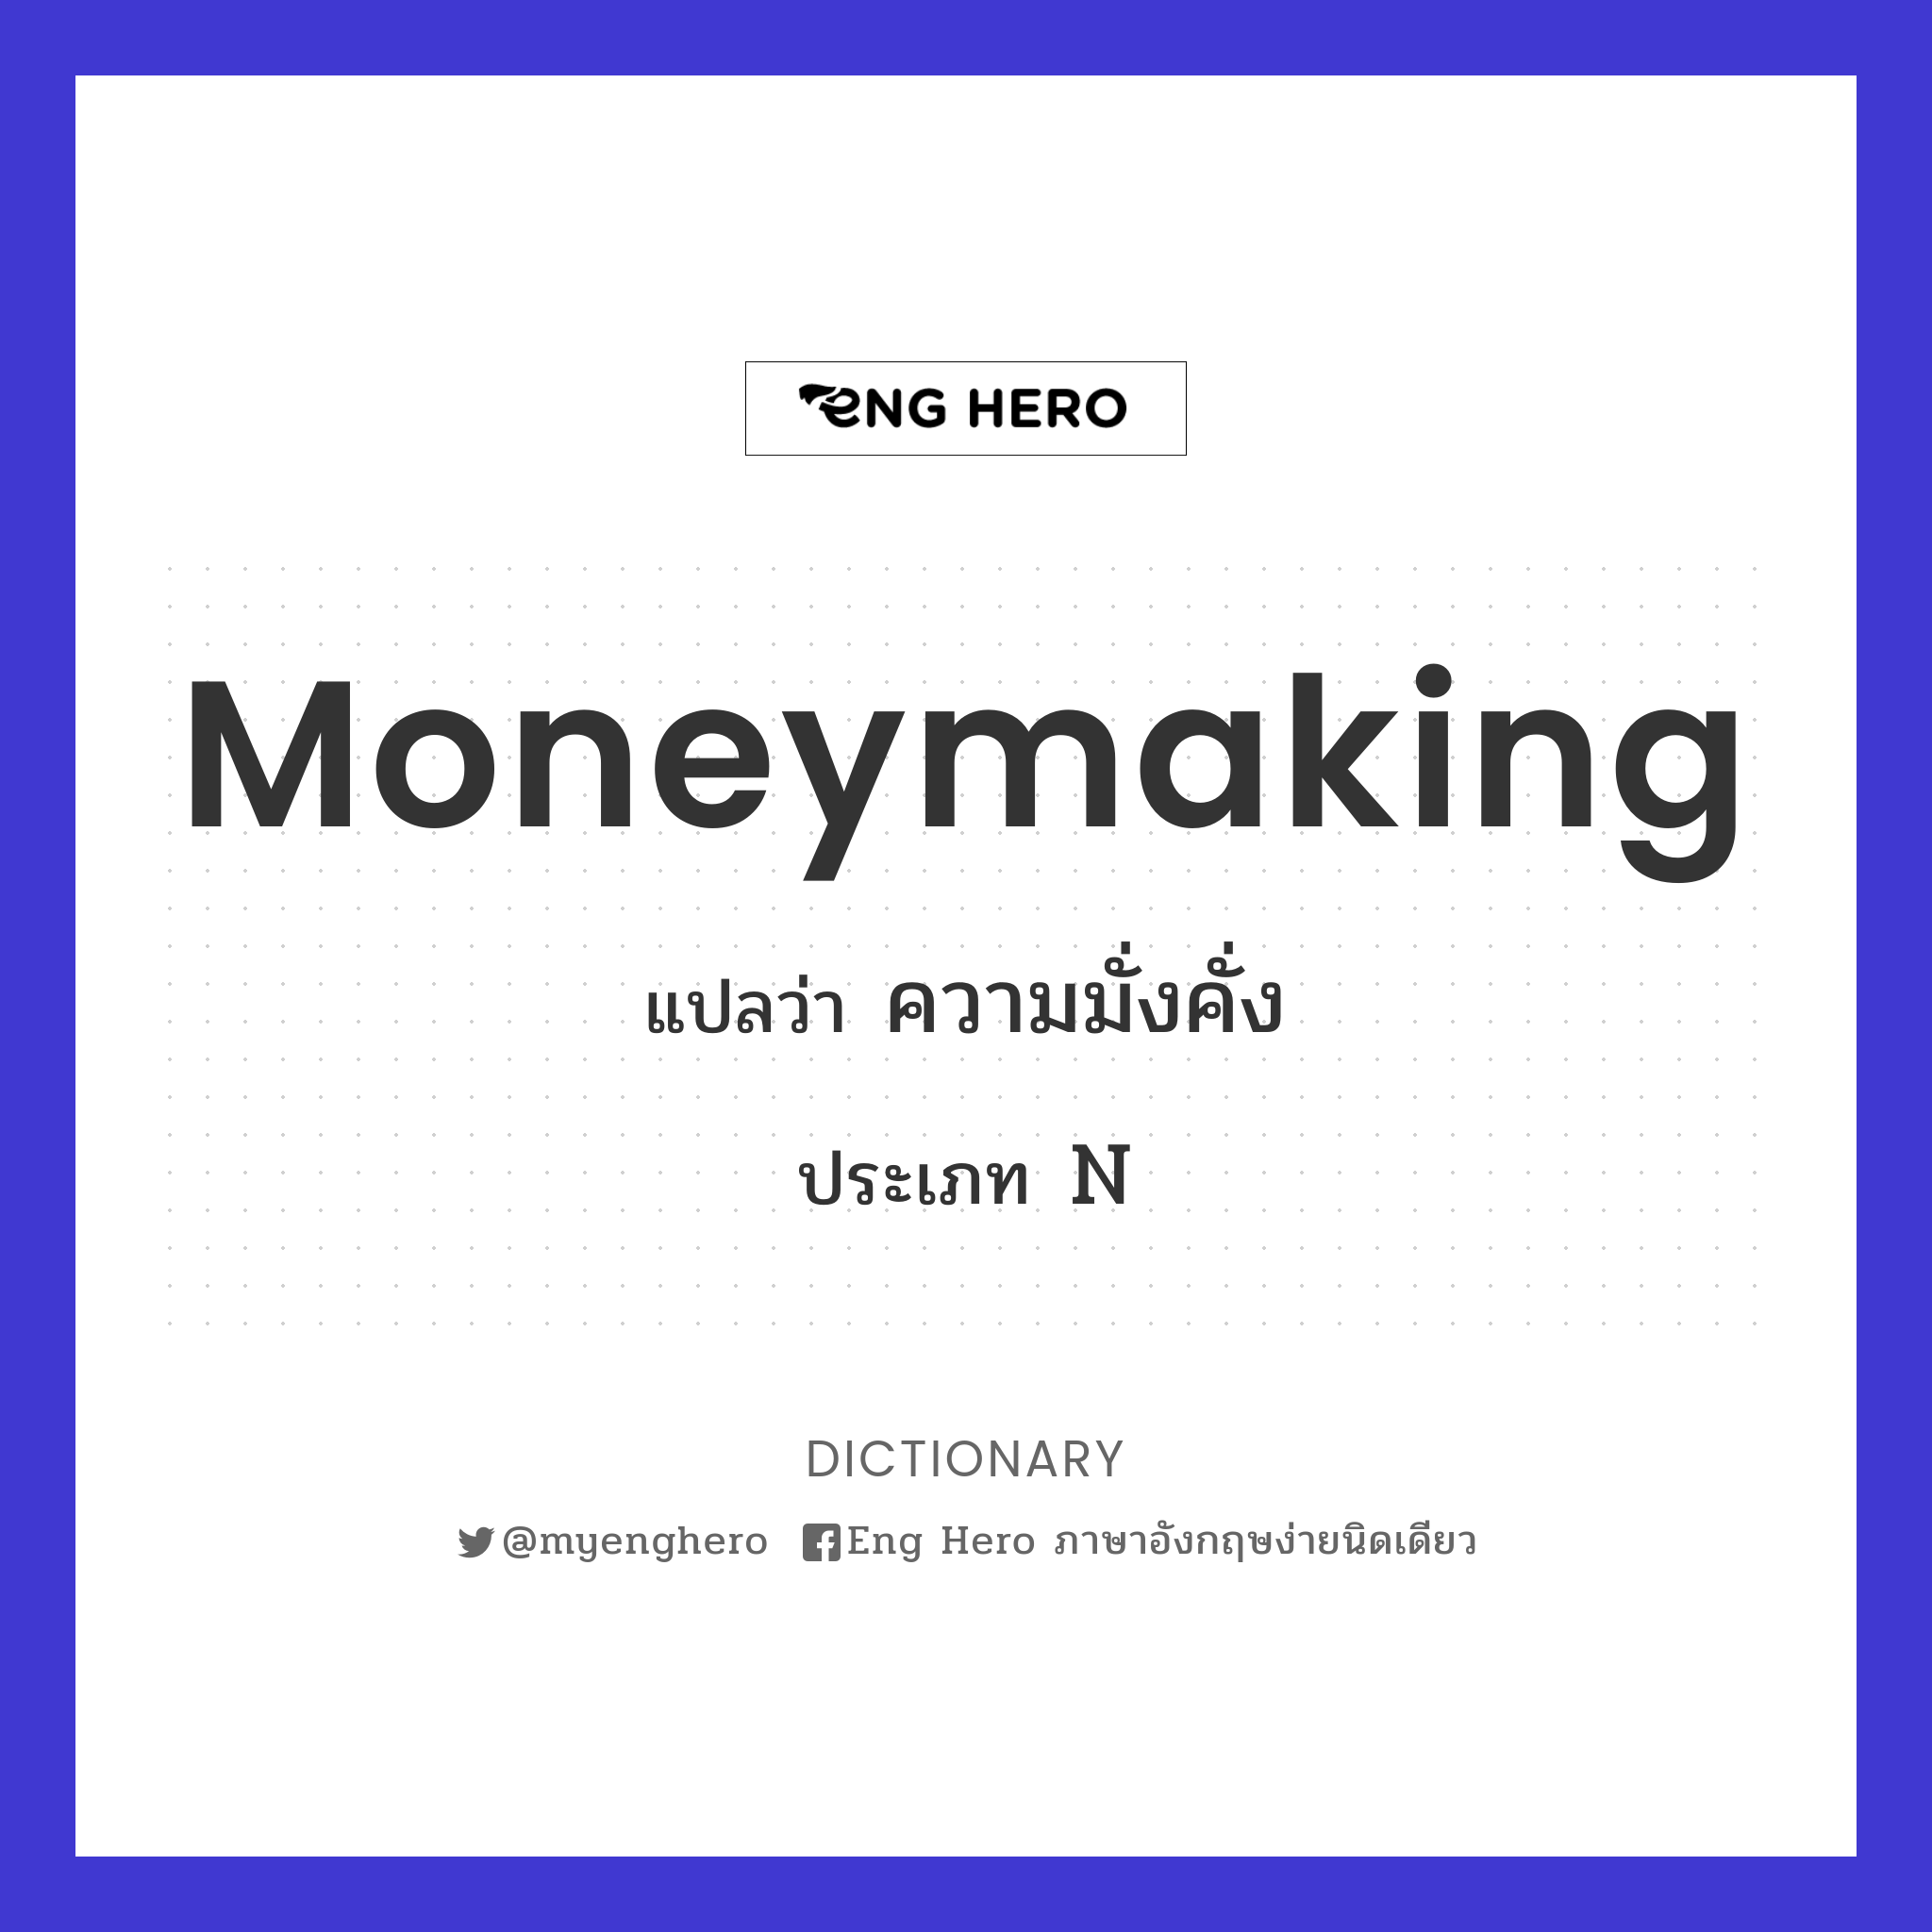 moneymaking